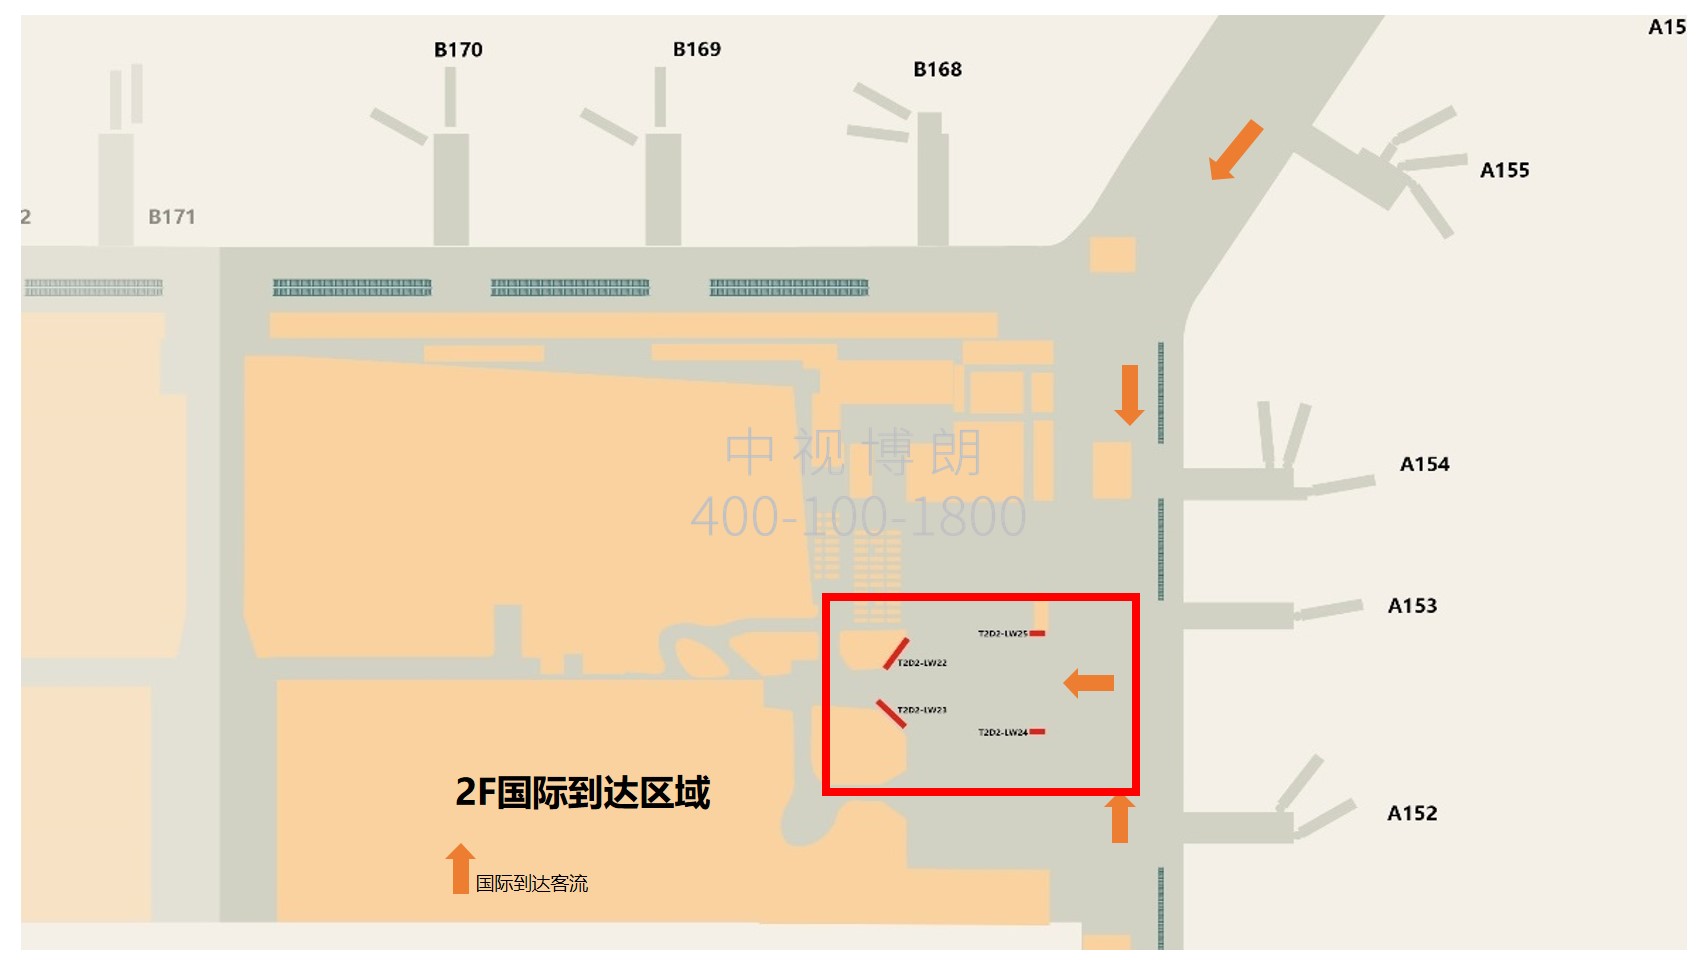 广州机场广告-T2国际到达海关后方灯箱套装1点位图